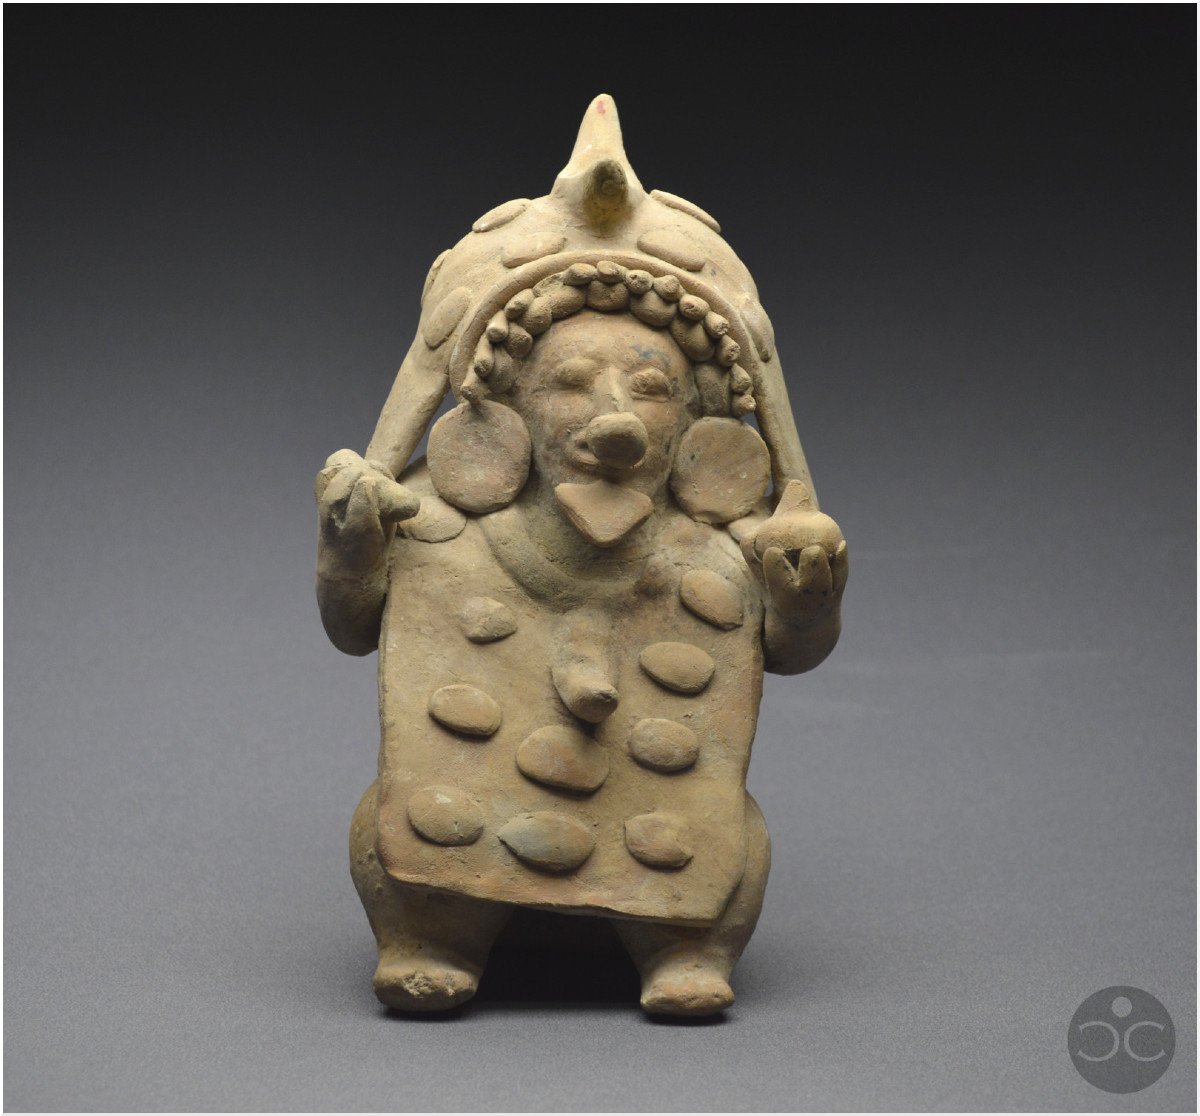 Équateur, 500 av - 500 ap J. -C., Culture Jama-Coaque, Shaman aux offrandes, Céramique ocre-photo-3